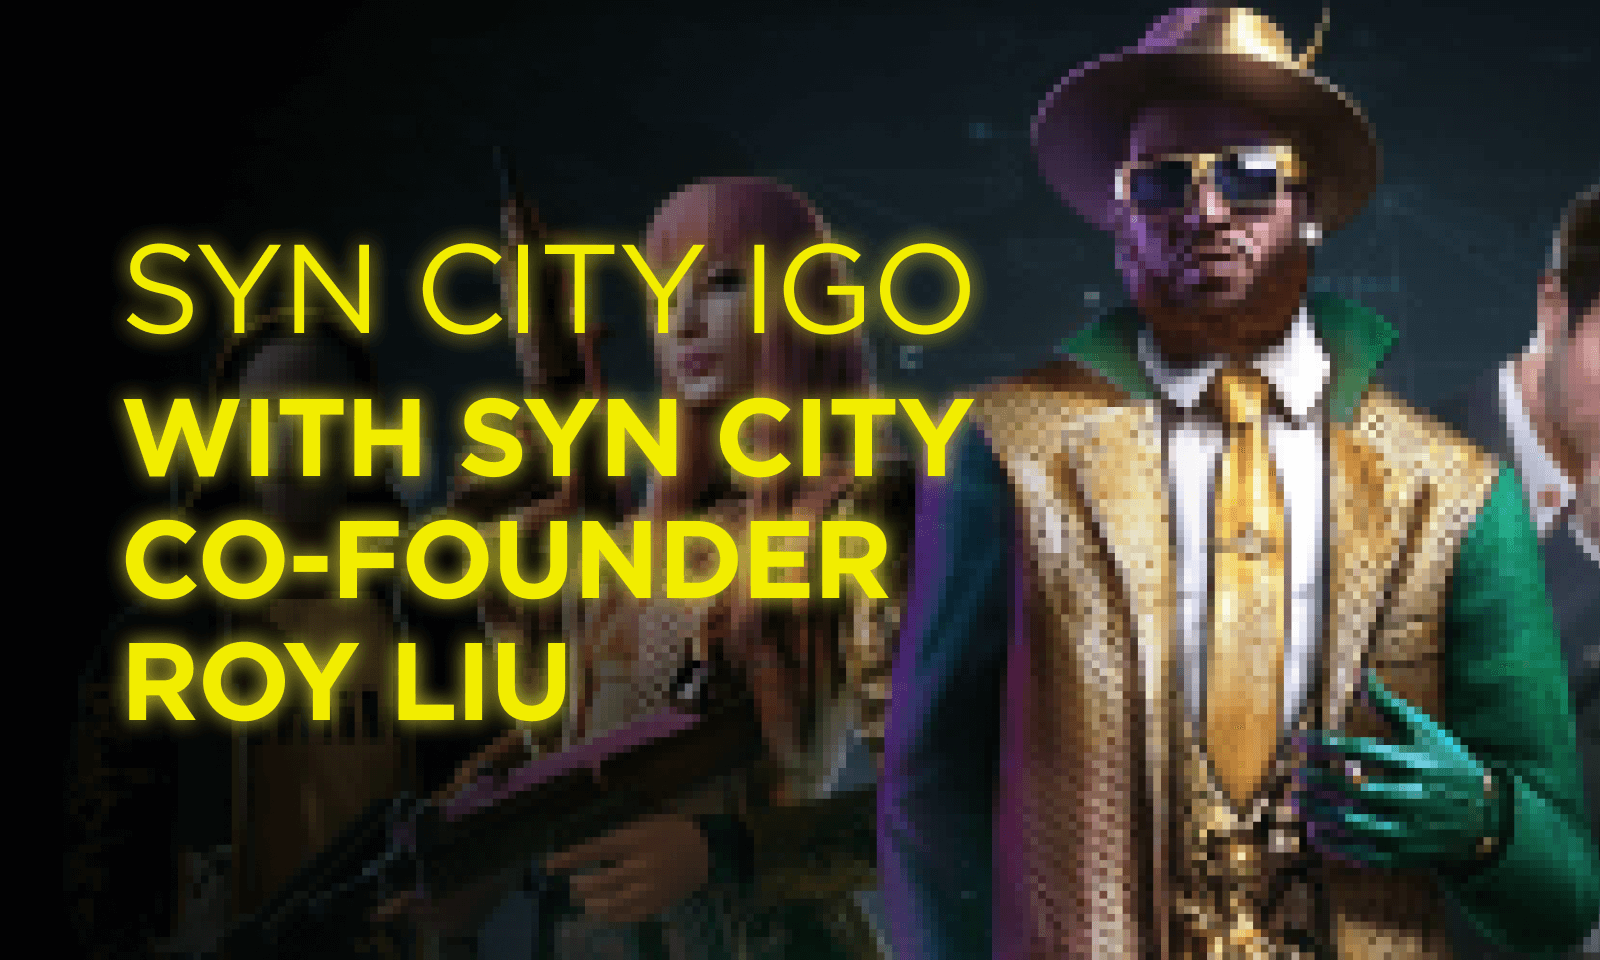 SYN CITY IGO WITH SYN CITY CO-FOUNDER ROY LIU